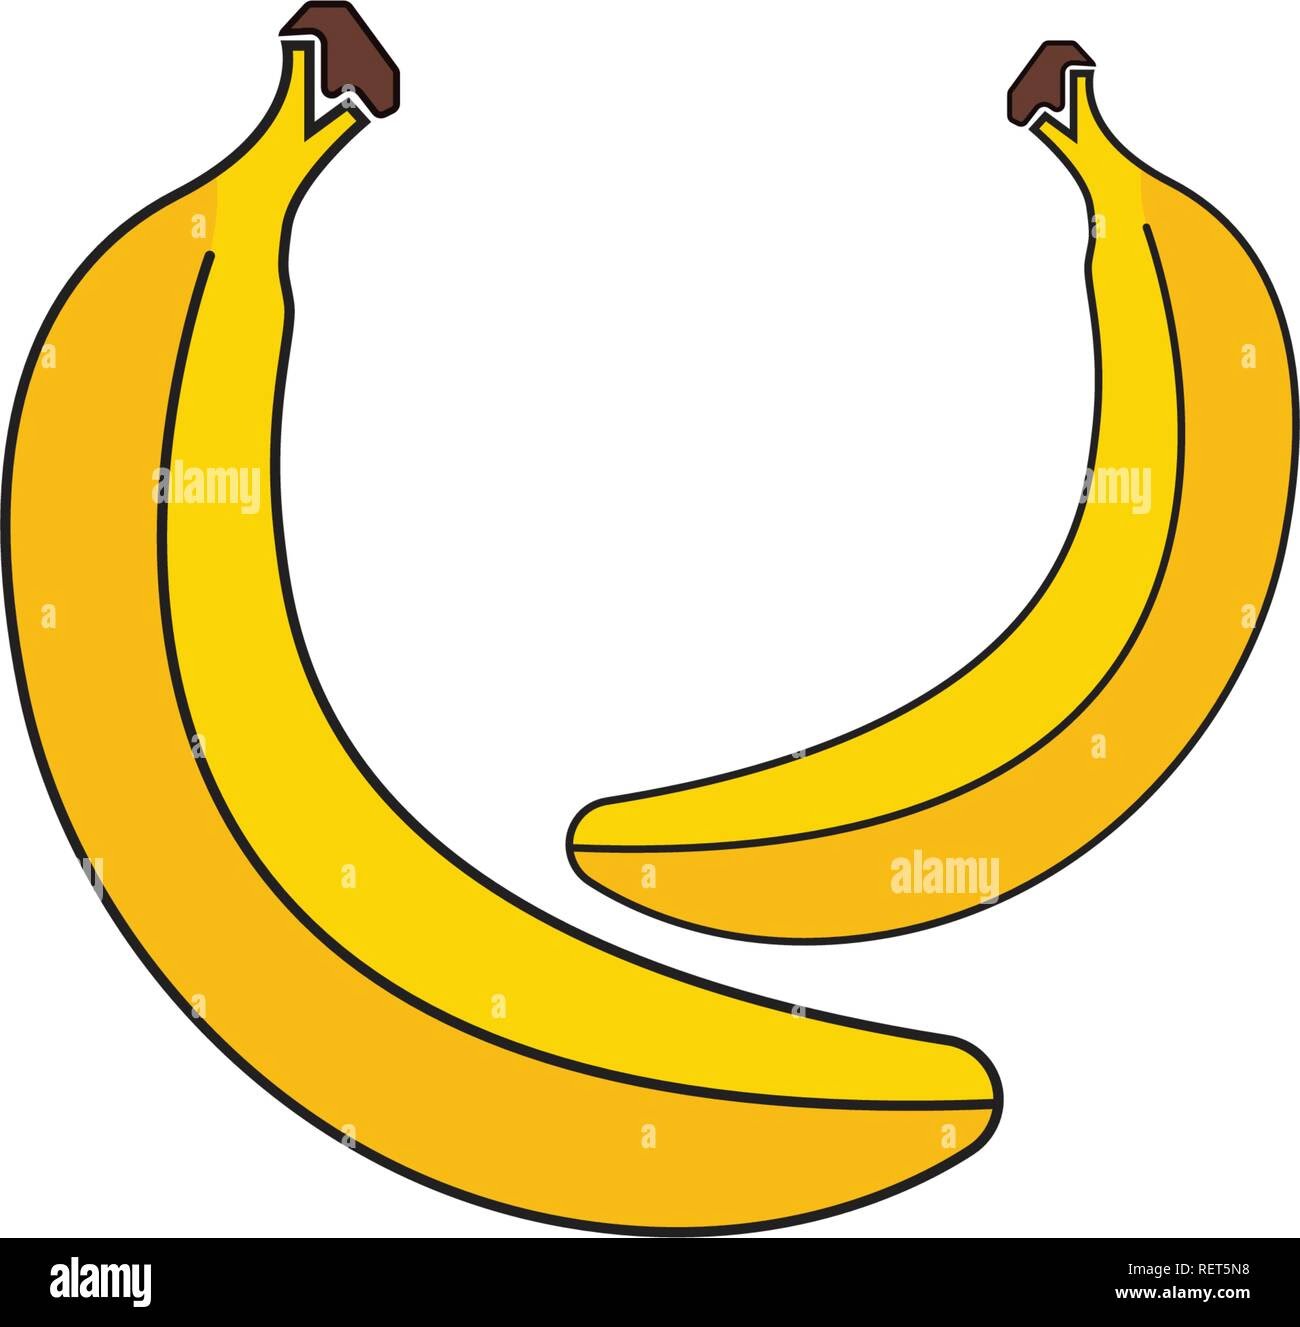 banana-template-printable-free-printable